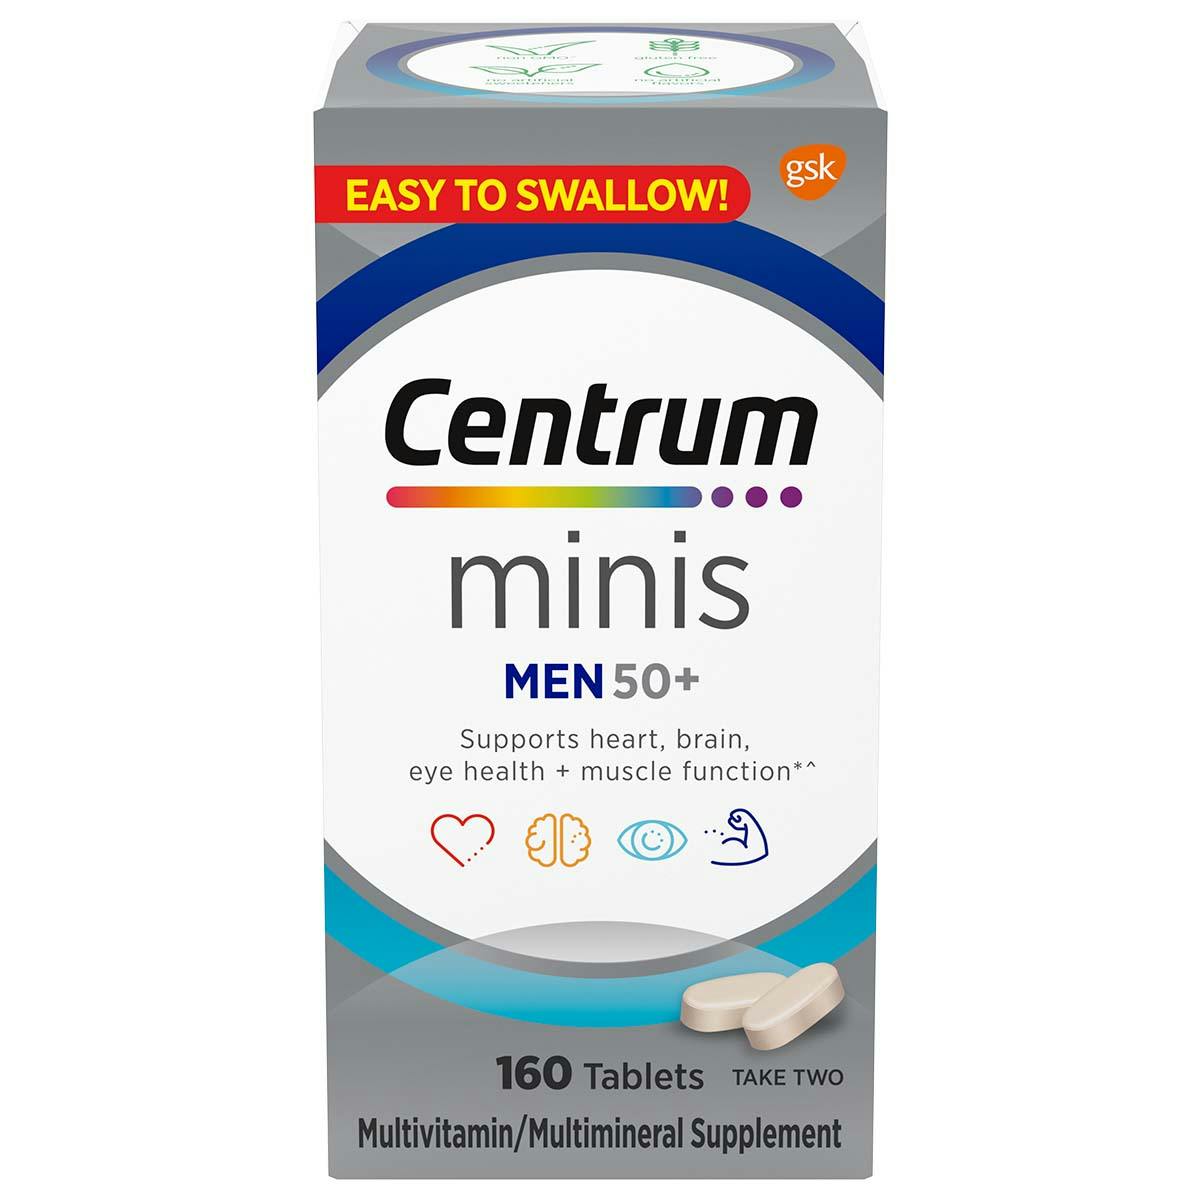 Box of Centrum Minis Men 50plus multivitamins